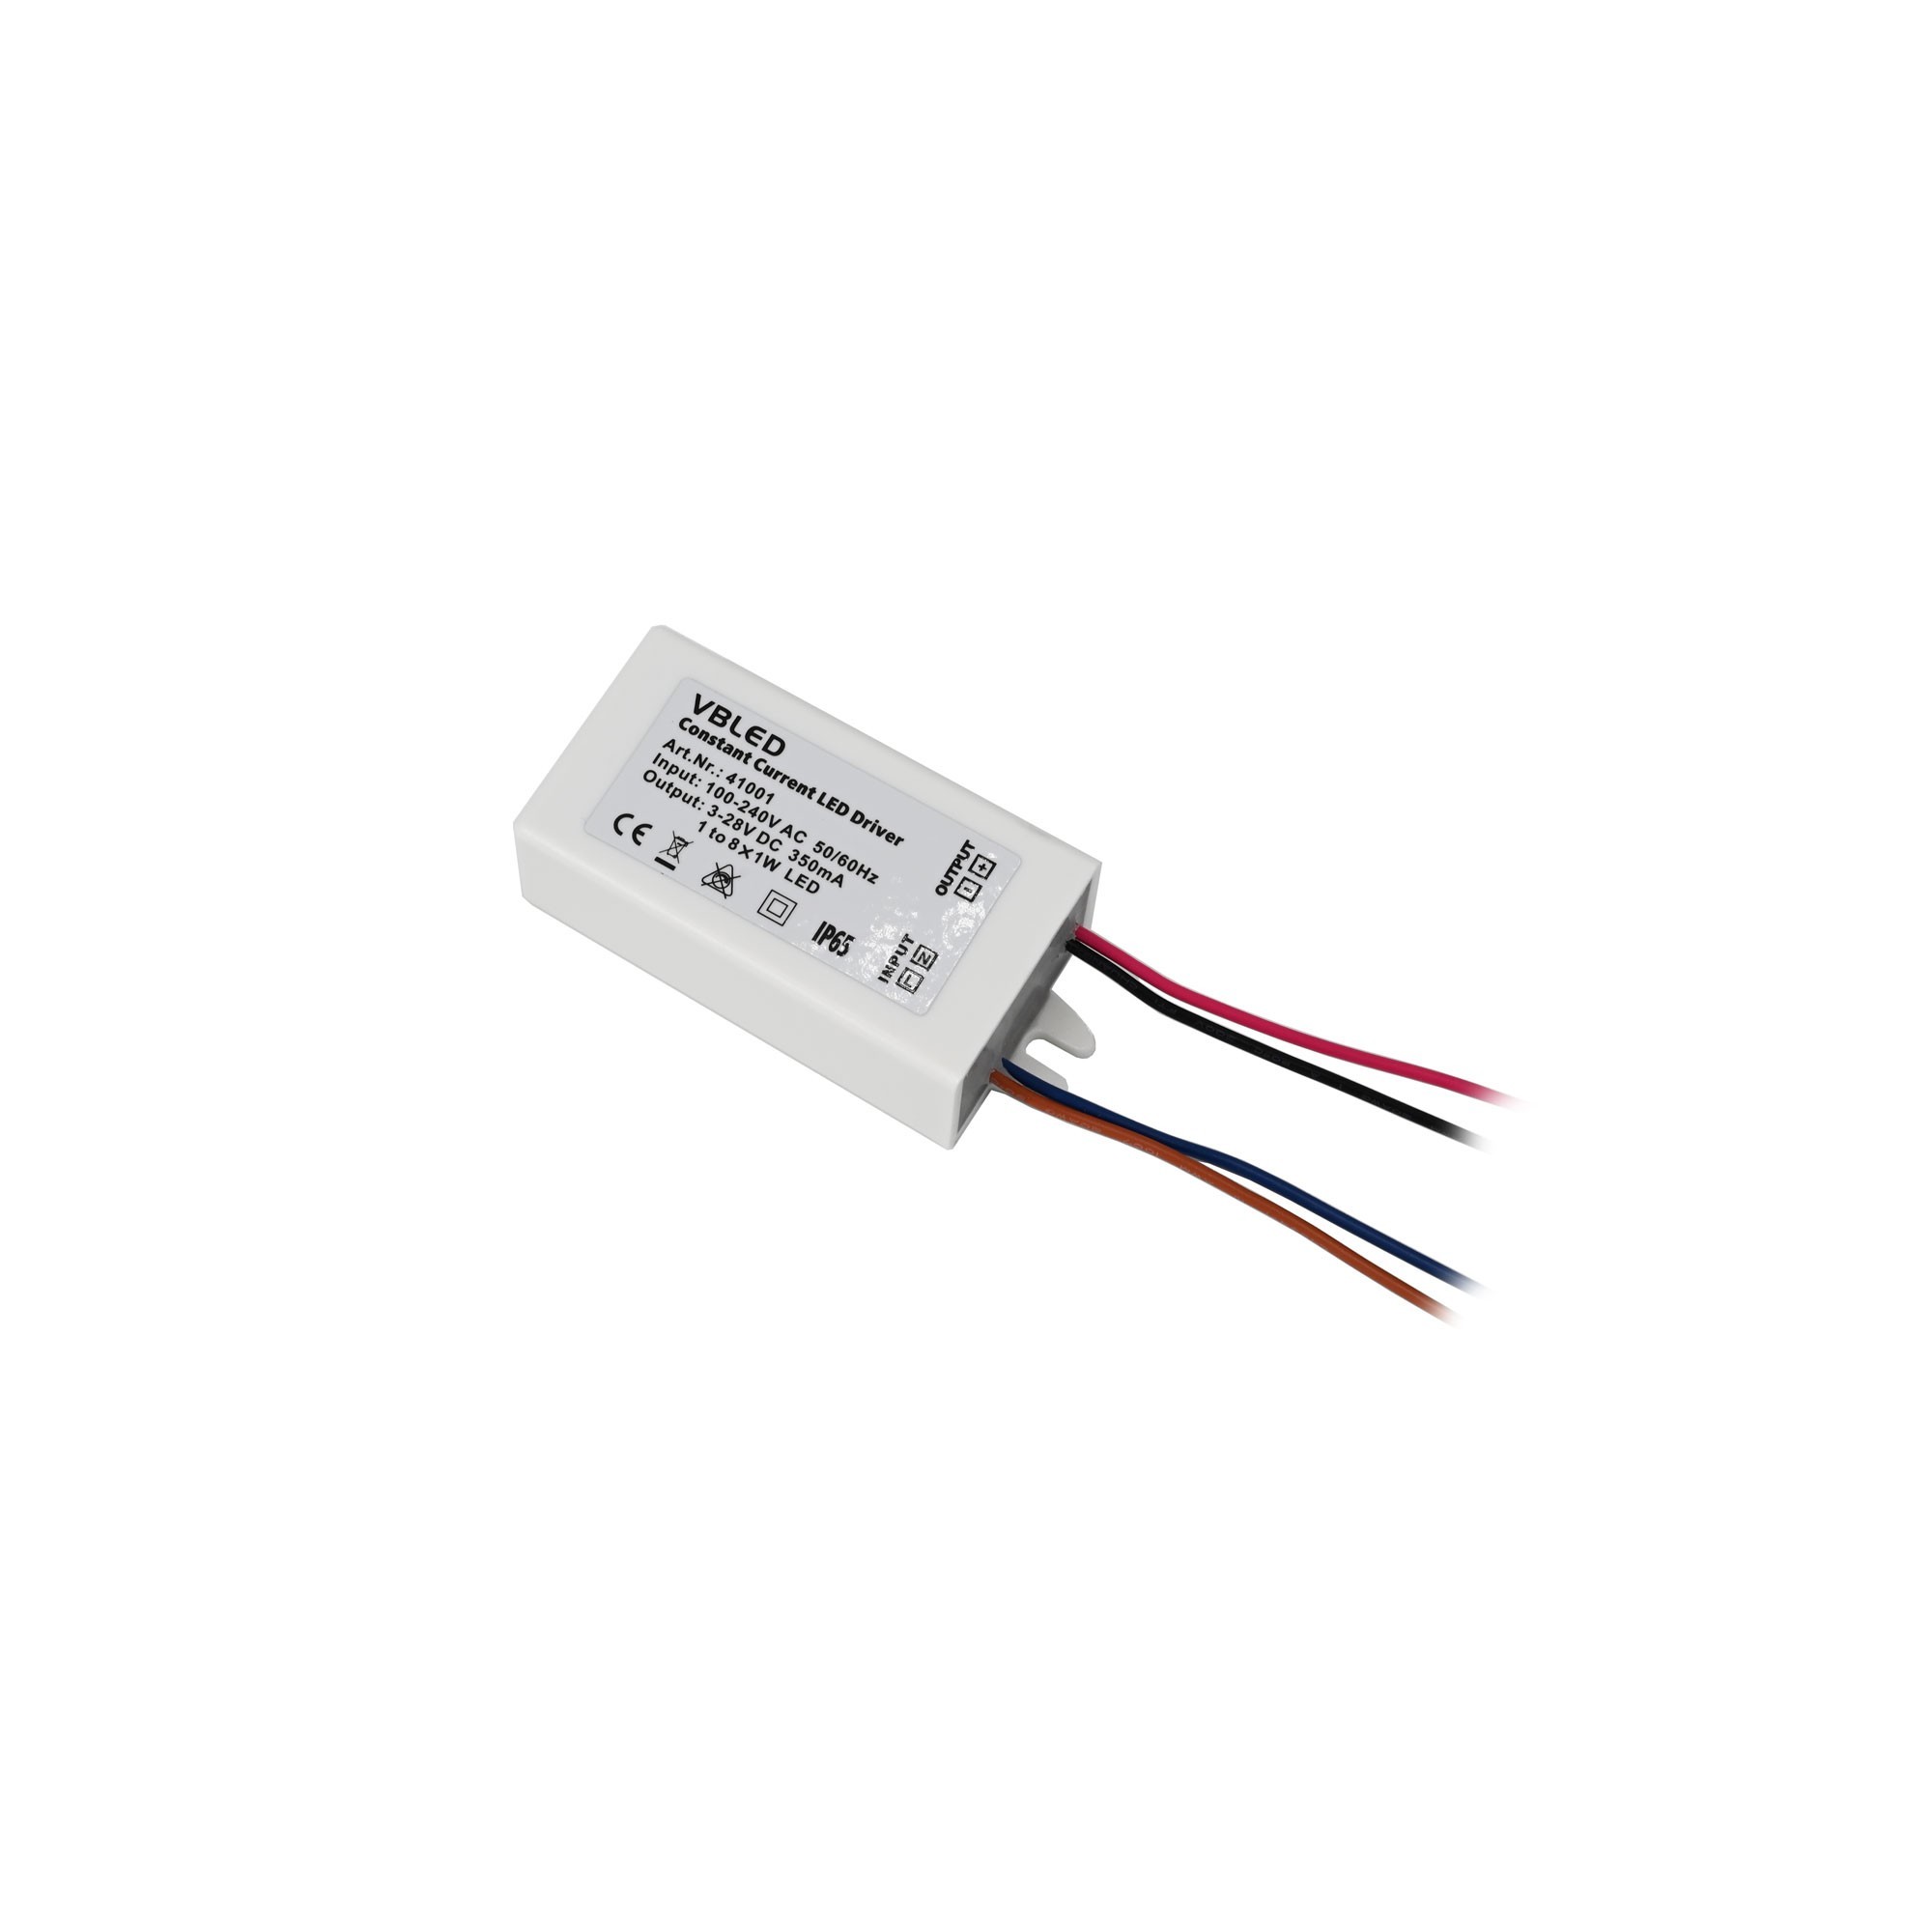 Fuente de alimentación LED de corriente constante 3-32V CC / 350mA 10W IP65